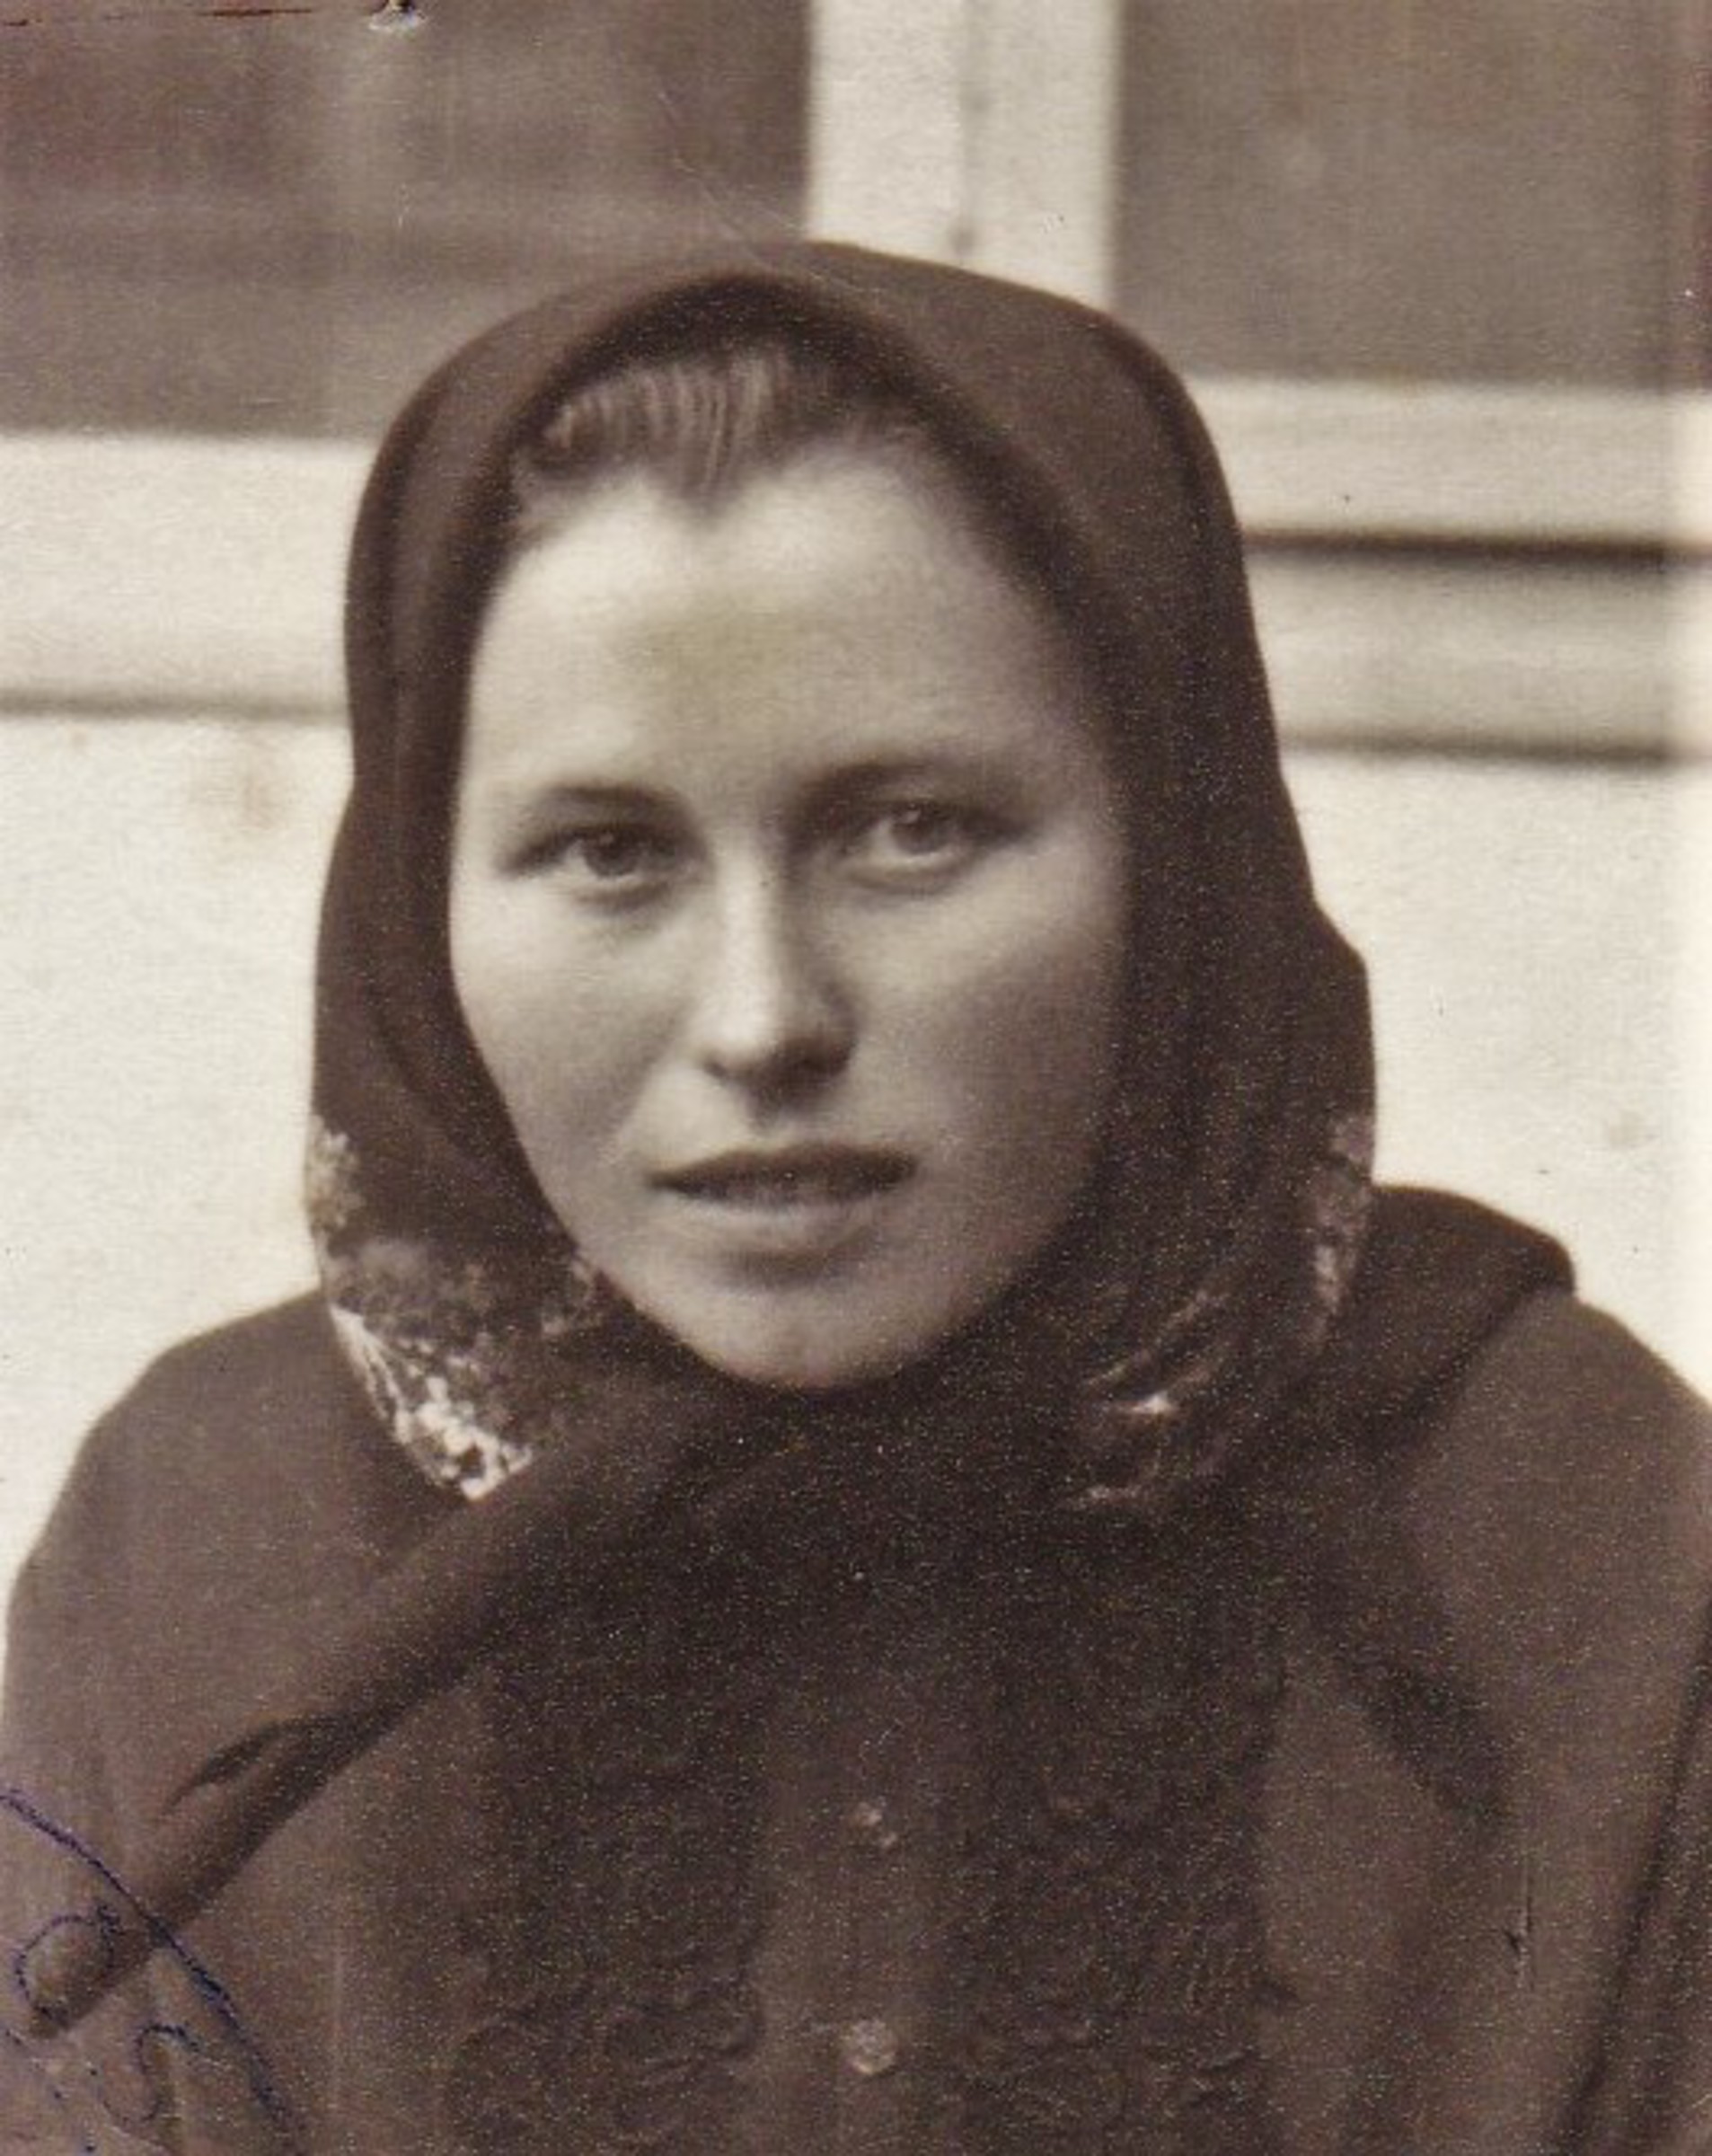 1945 - portrait